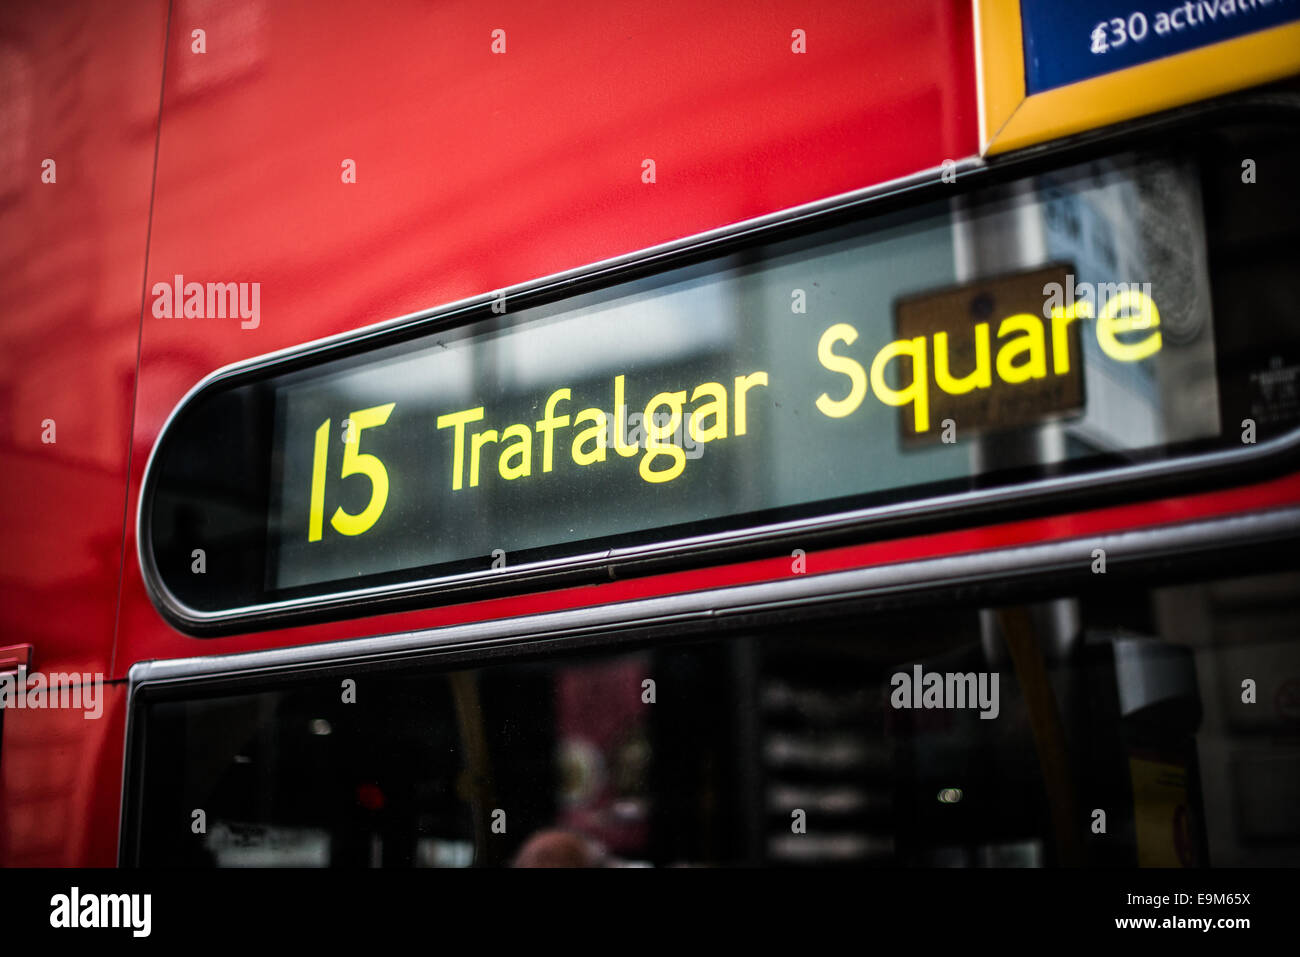 LONDON, Großbritannien - das Schild der Buslinie 15 zum Trafalgar Square in London, Großbritannien. Der Platz wurde erbaut, um Admiral Horatio Nelsons Sieg in der Schlacht von Trafalgar zu würdigen. Er dient sowohl als historische Stätte als auch als zentraler Knotenpunkt für kulturelle und gesellschaftliche Veranstaltungen. Stockfoto